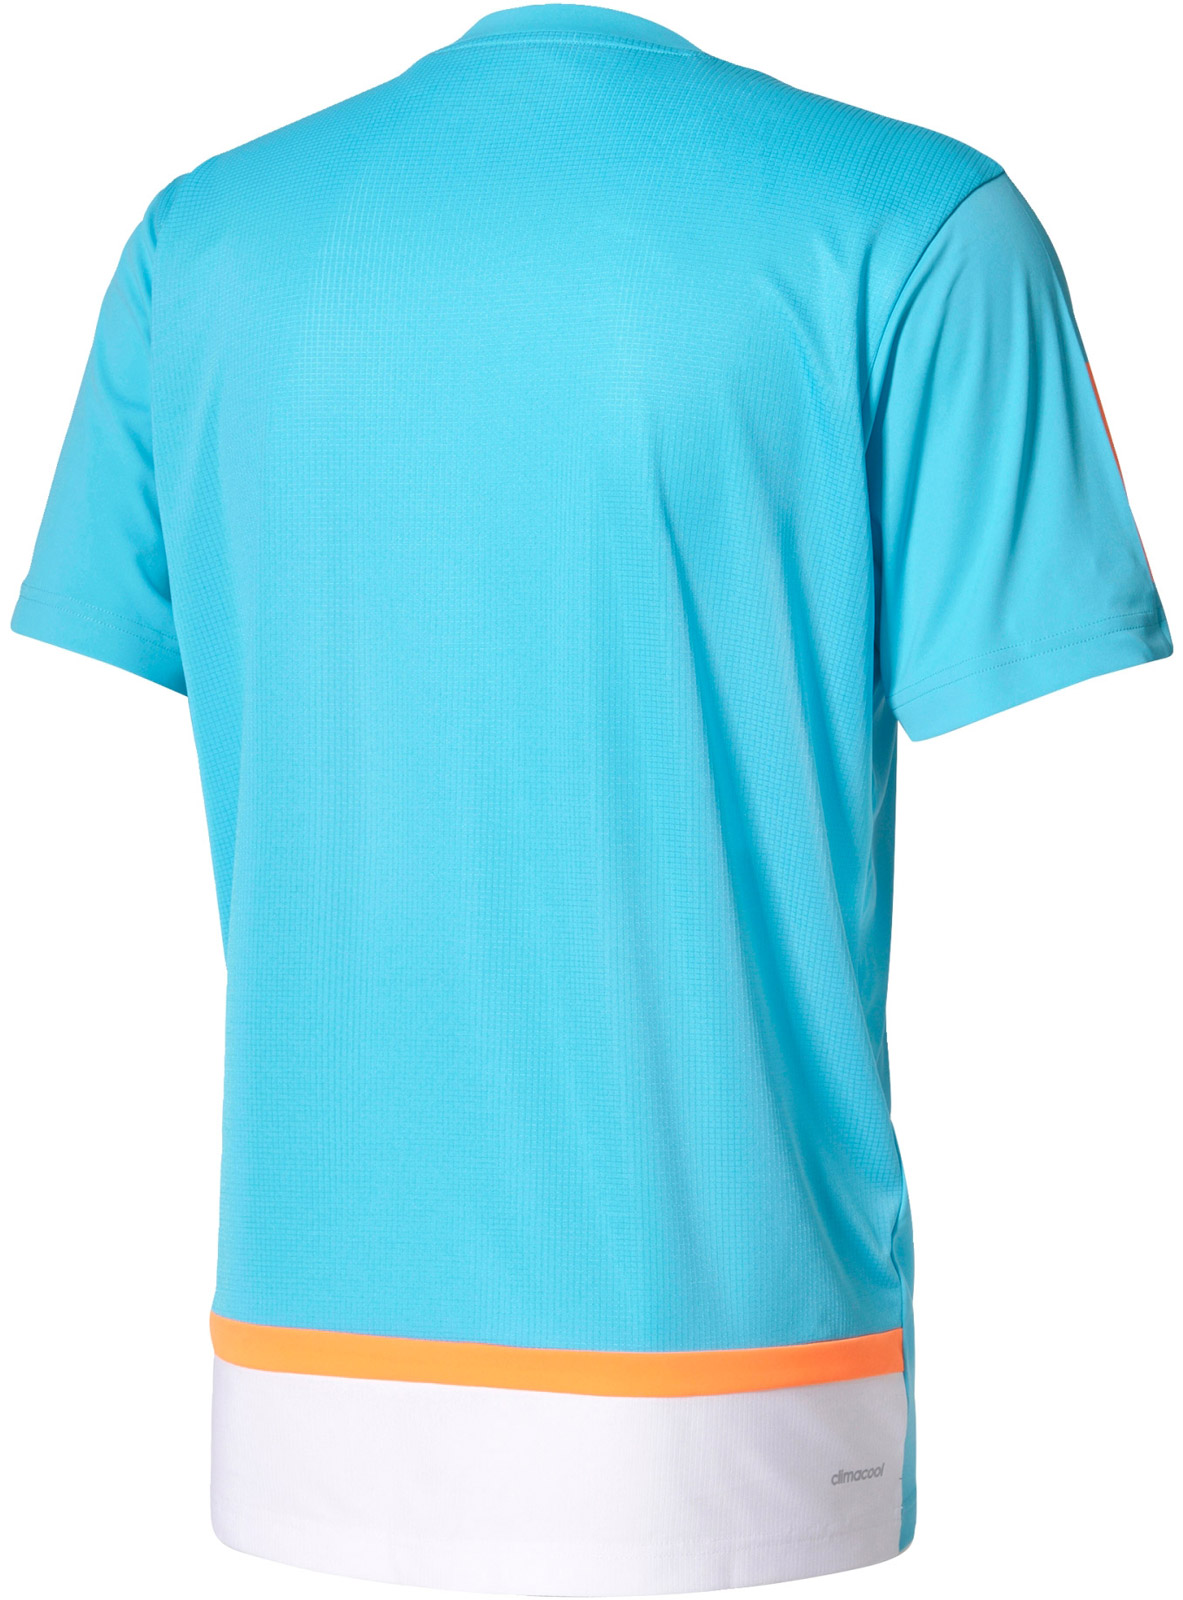 Men’s tennis T-shirt